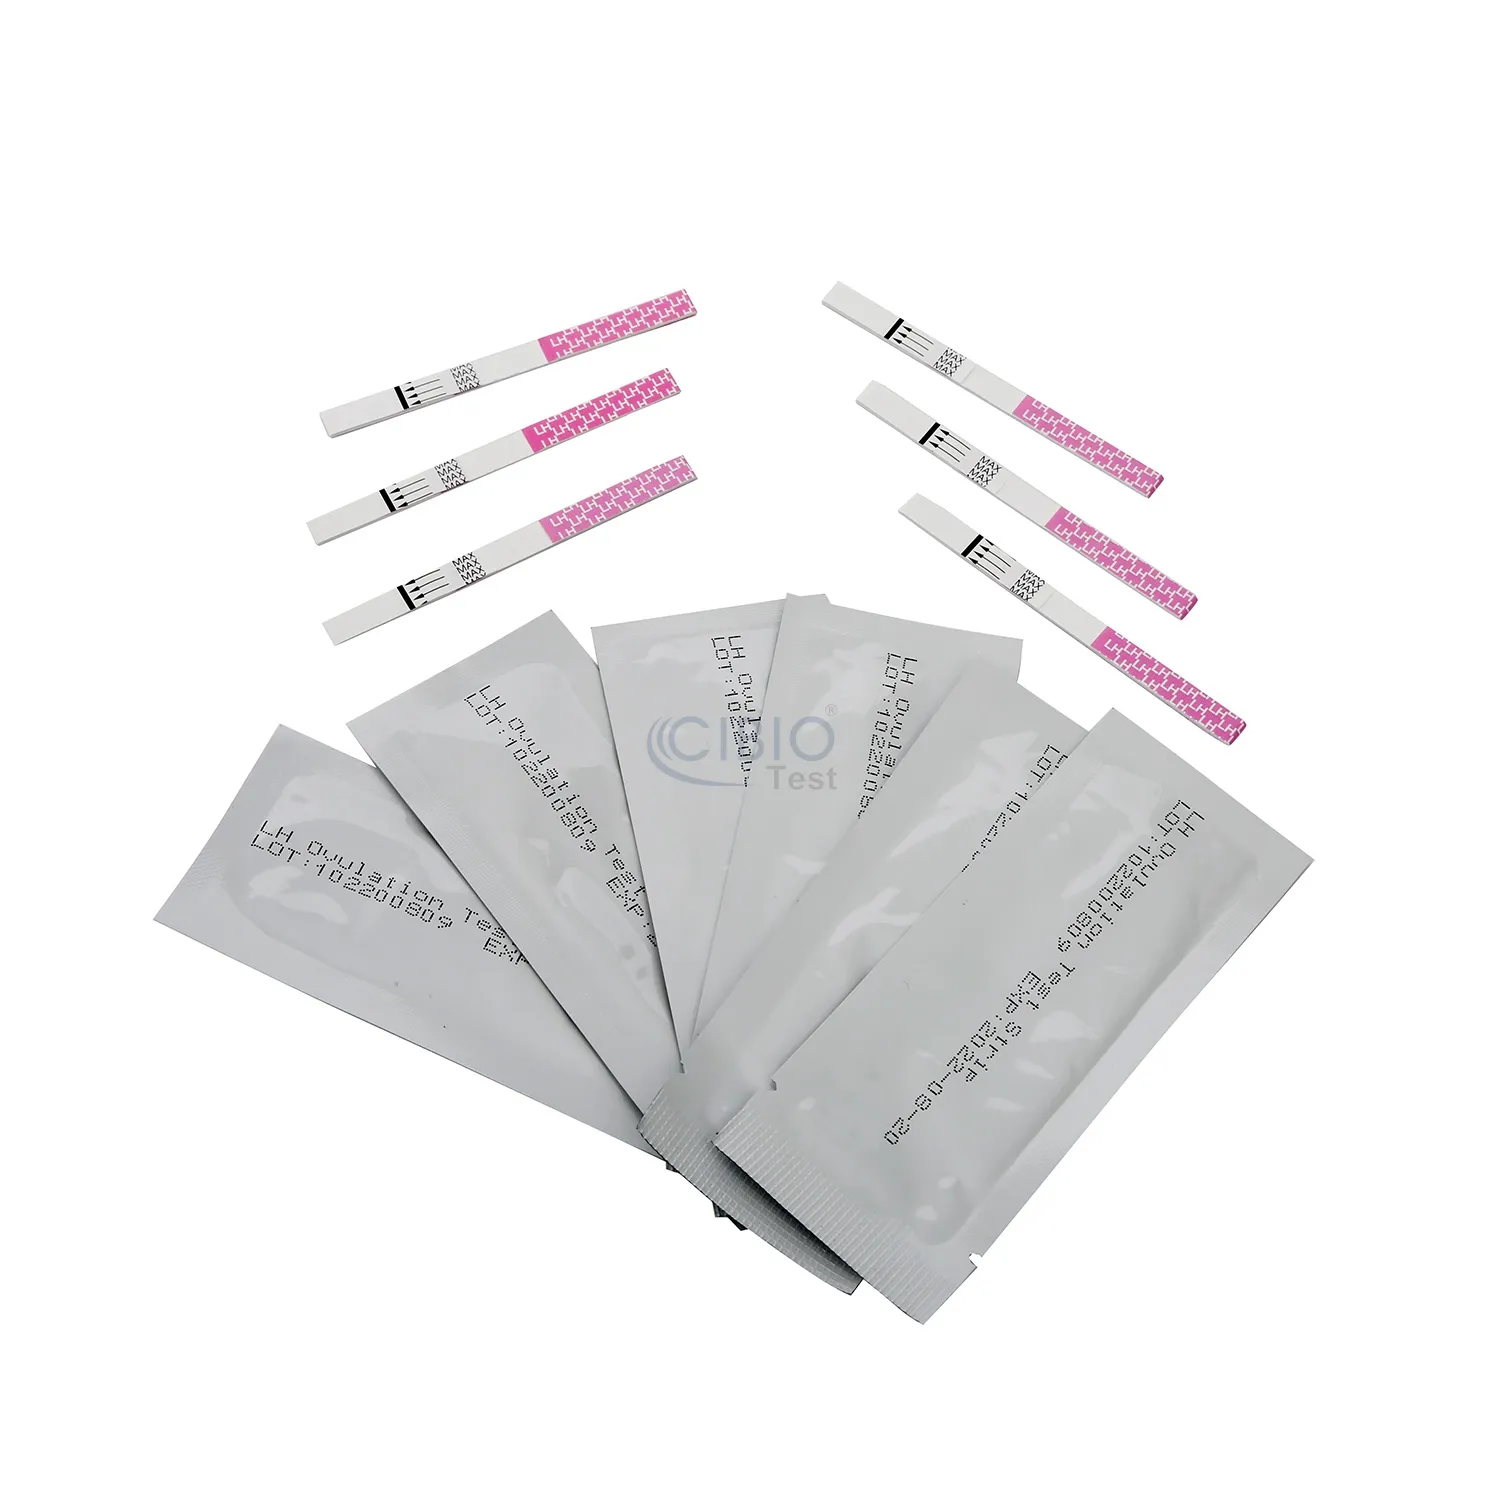 Strip tes urin diagnostik untuk penggunaan di rumah, strip uji kehamilan ovulasi LH